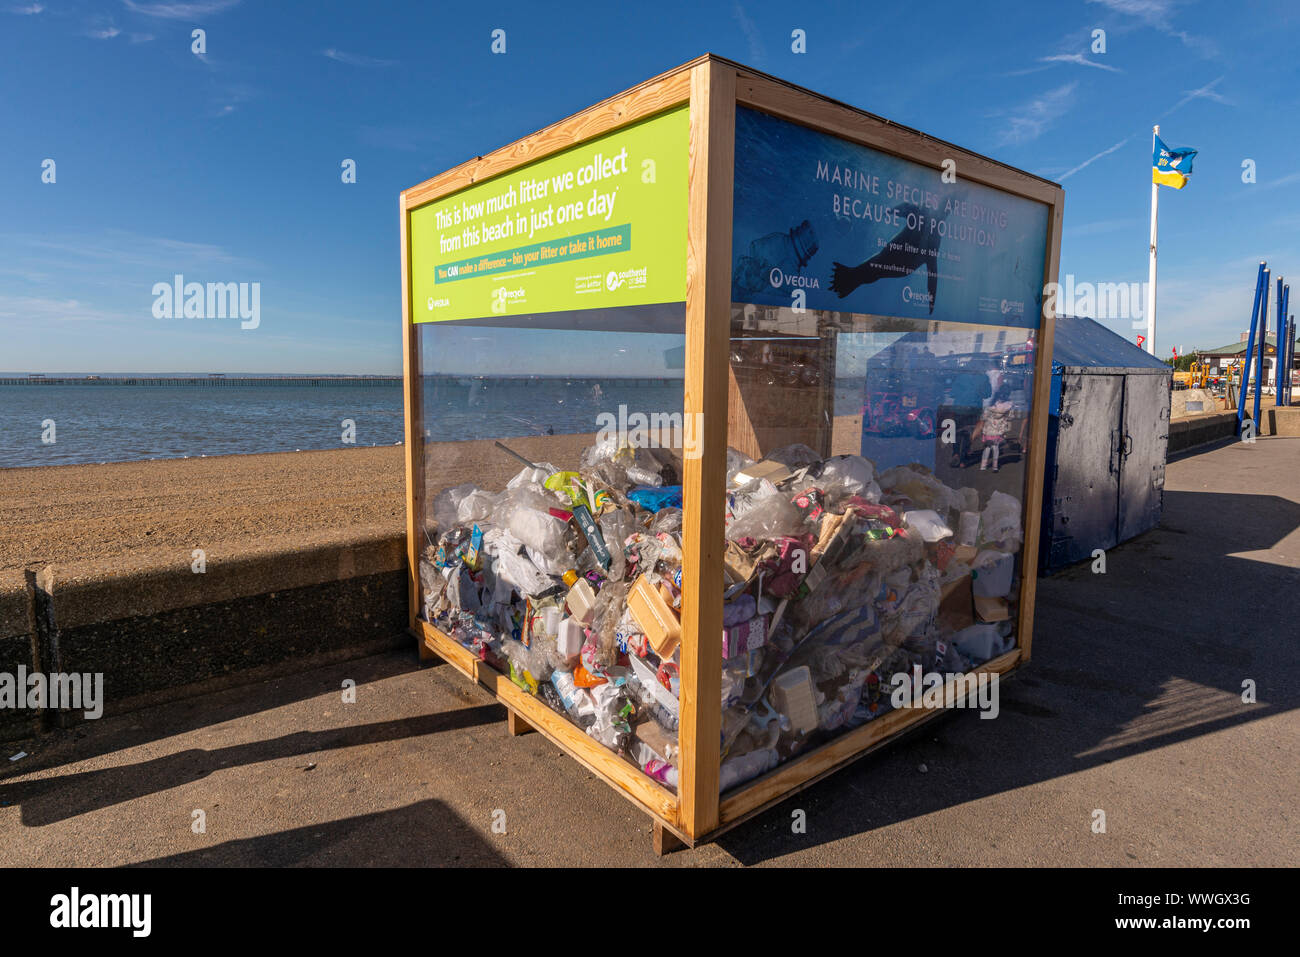 Veolia Southend on Sea großen Müll Würfel verwendet, um die Menge von Abfällen aus der Strand gesammelt zu illustrieren und die Gefahren für die Tier- und Pflanzenwelt Stockfoto